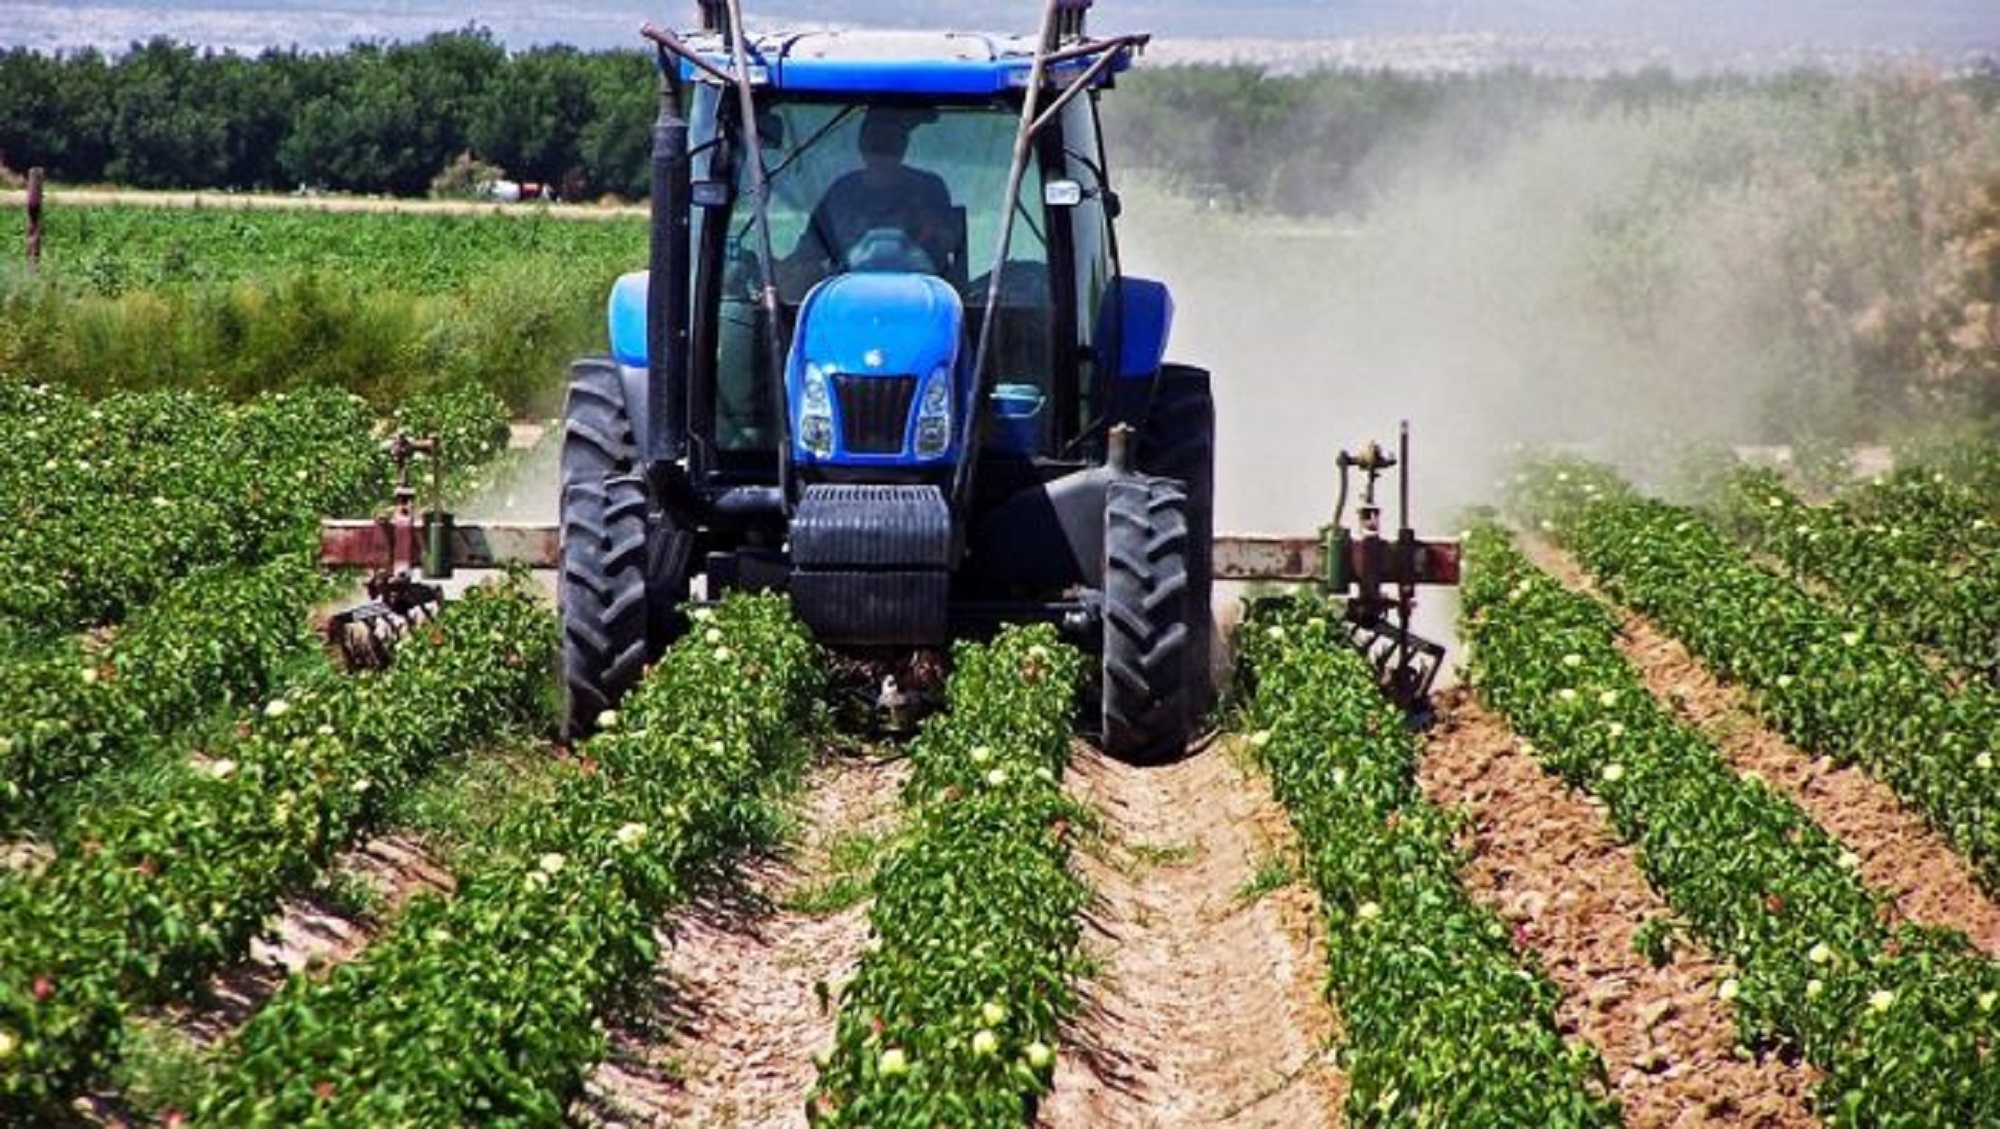 Ειδικός Φόρος Κατανάλωσης – Αγρότες: Διευκρινίσεις και παράταση υπό προϋποθέσεις